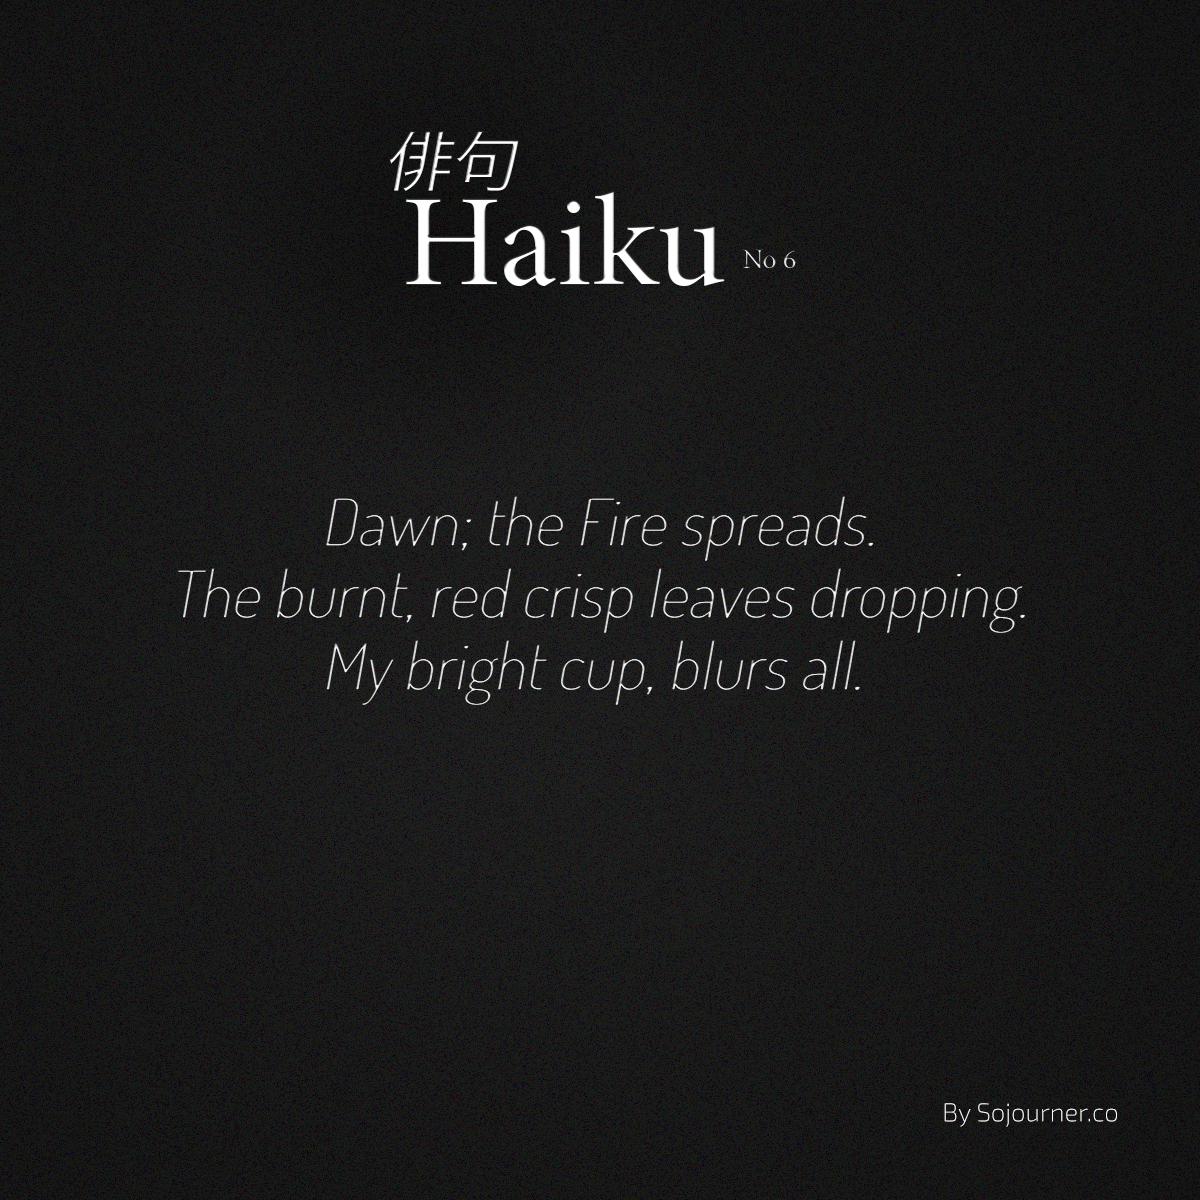 indefiniteloop.com - Haiku No. 6 - Waking.